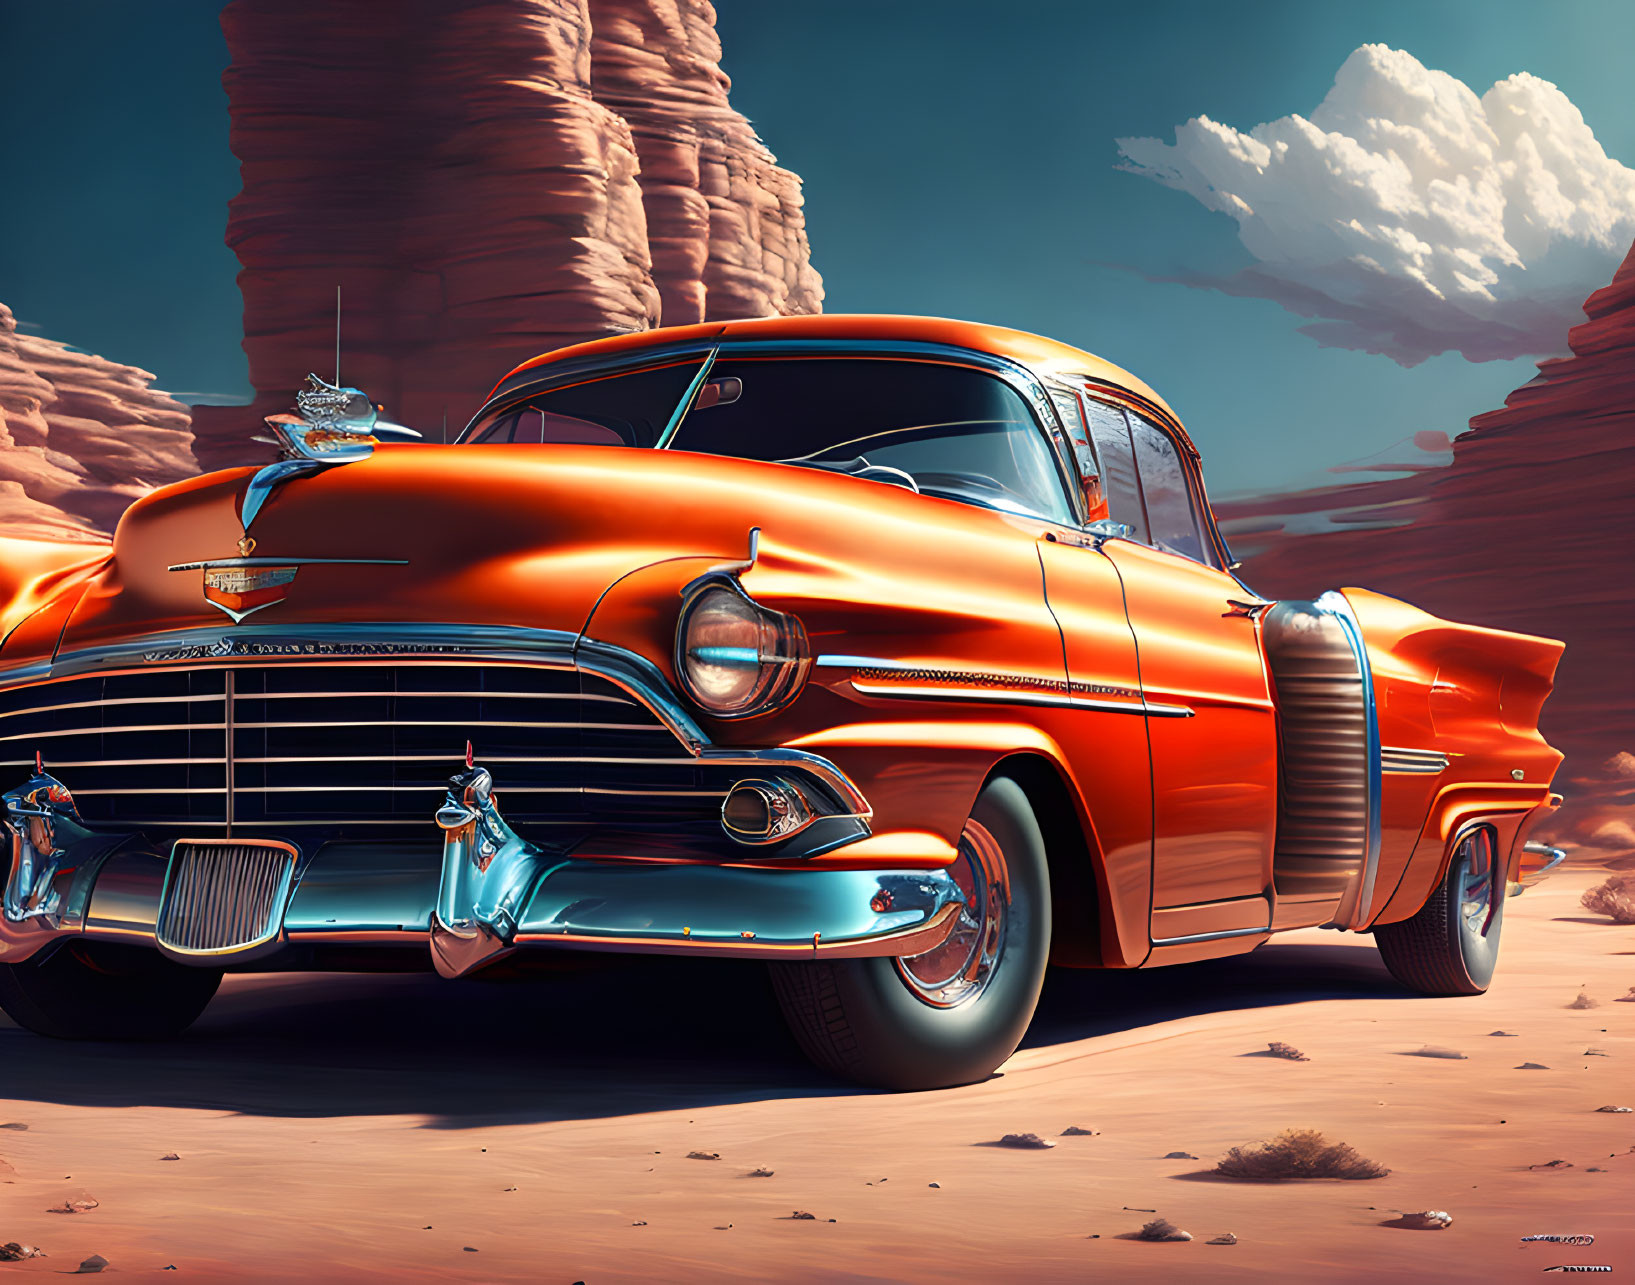 Vintage Orange Cadillac Parked in Desert Landscape